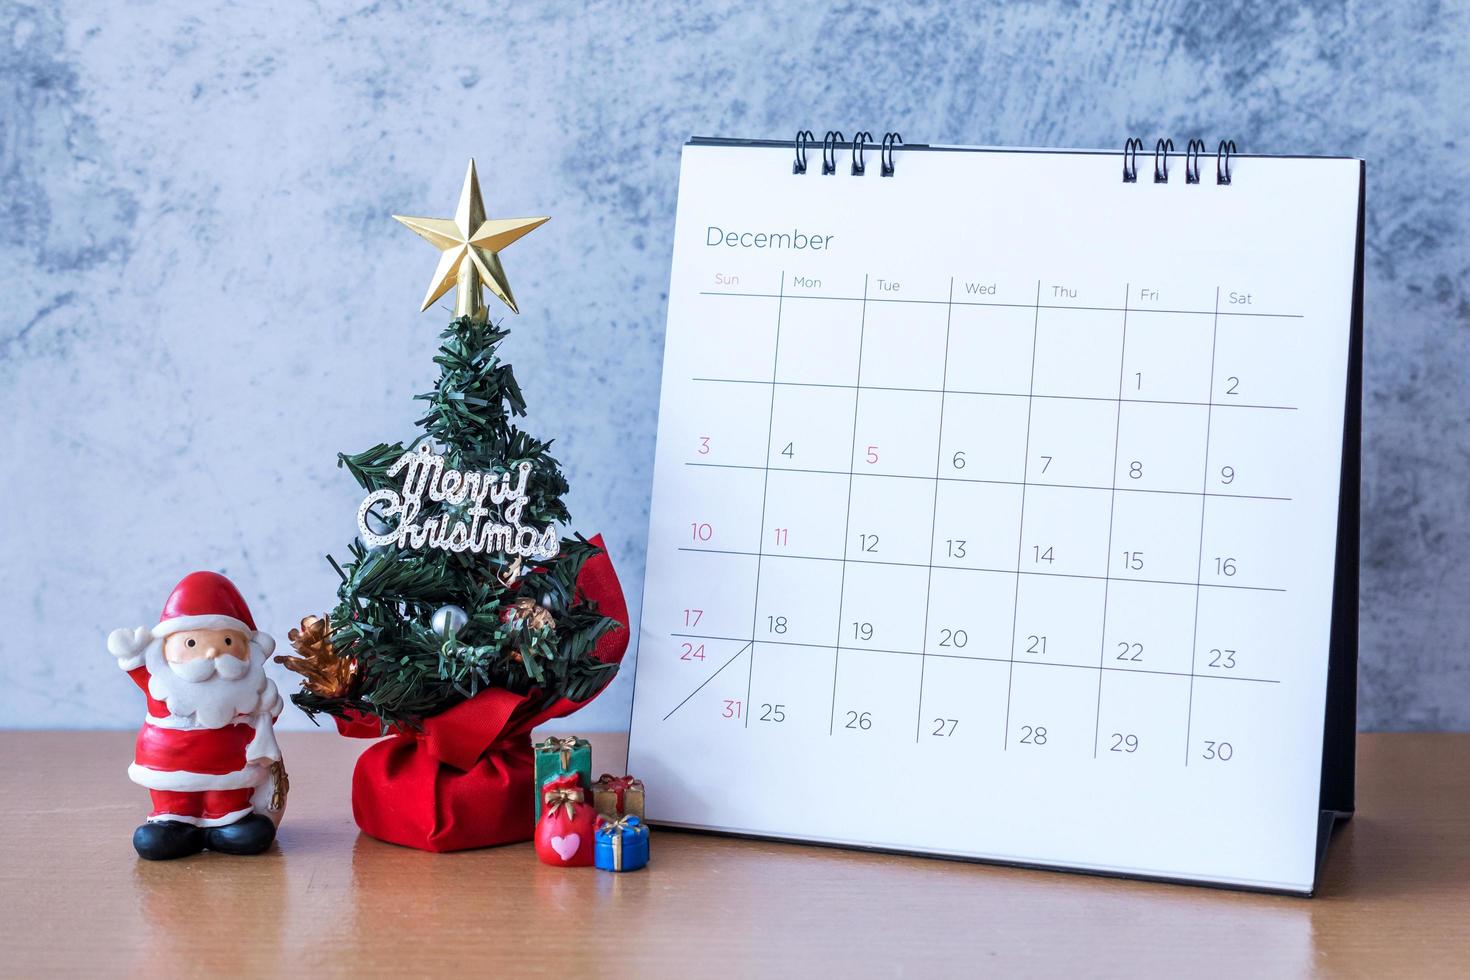 December kalender och juldekoration - jultomten, träd och present på träbord. jul och gott nytt år koncept foto